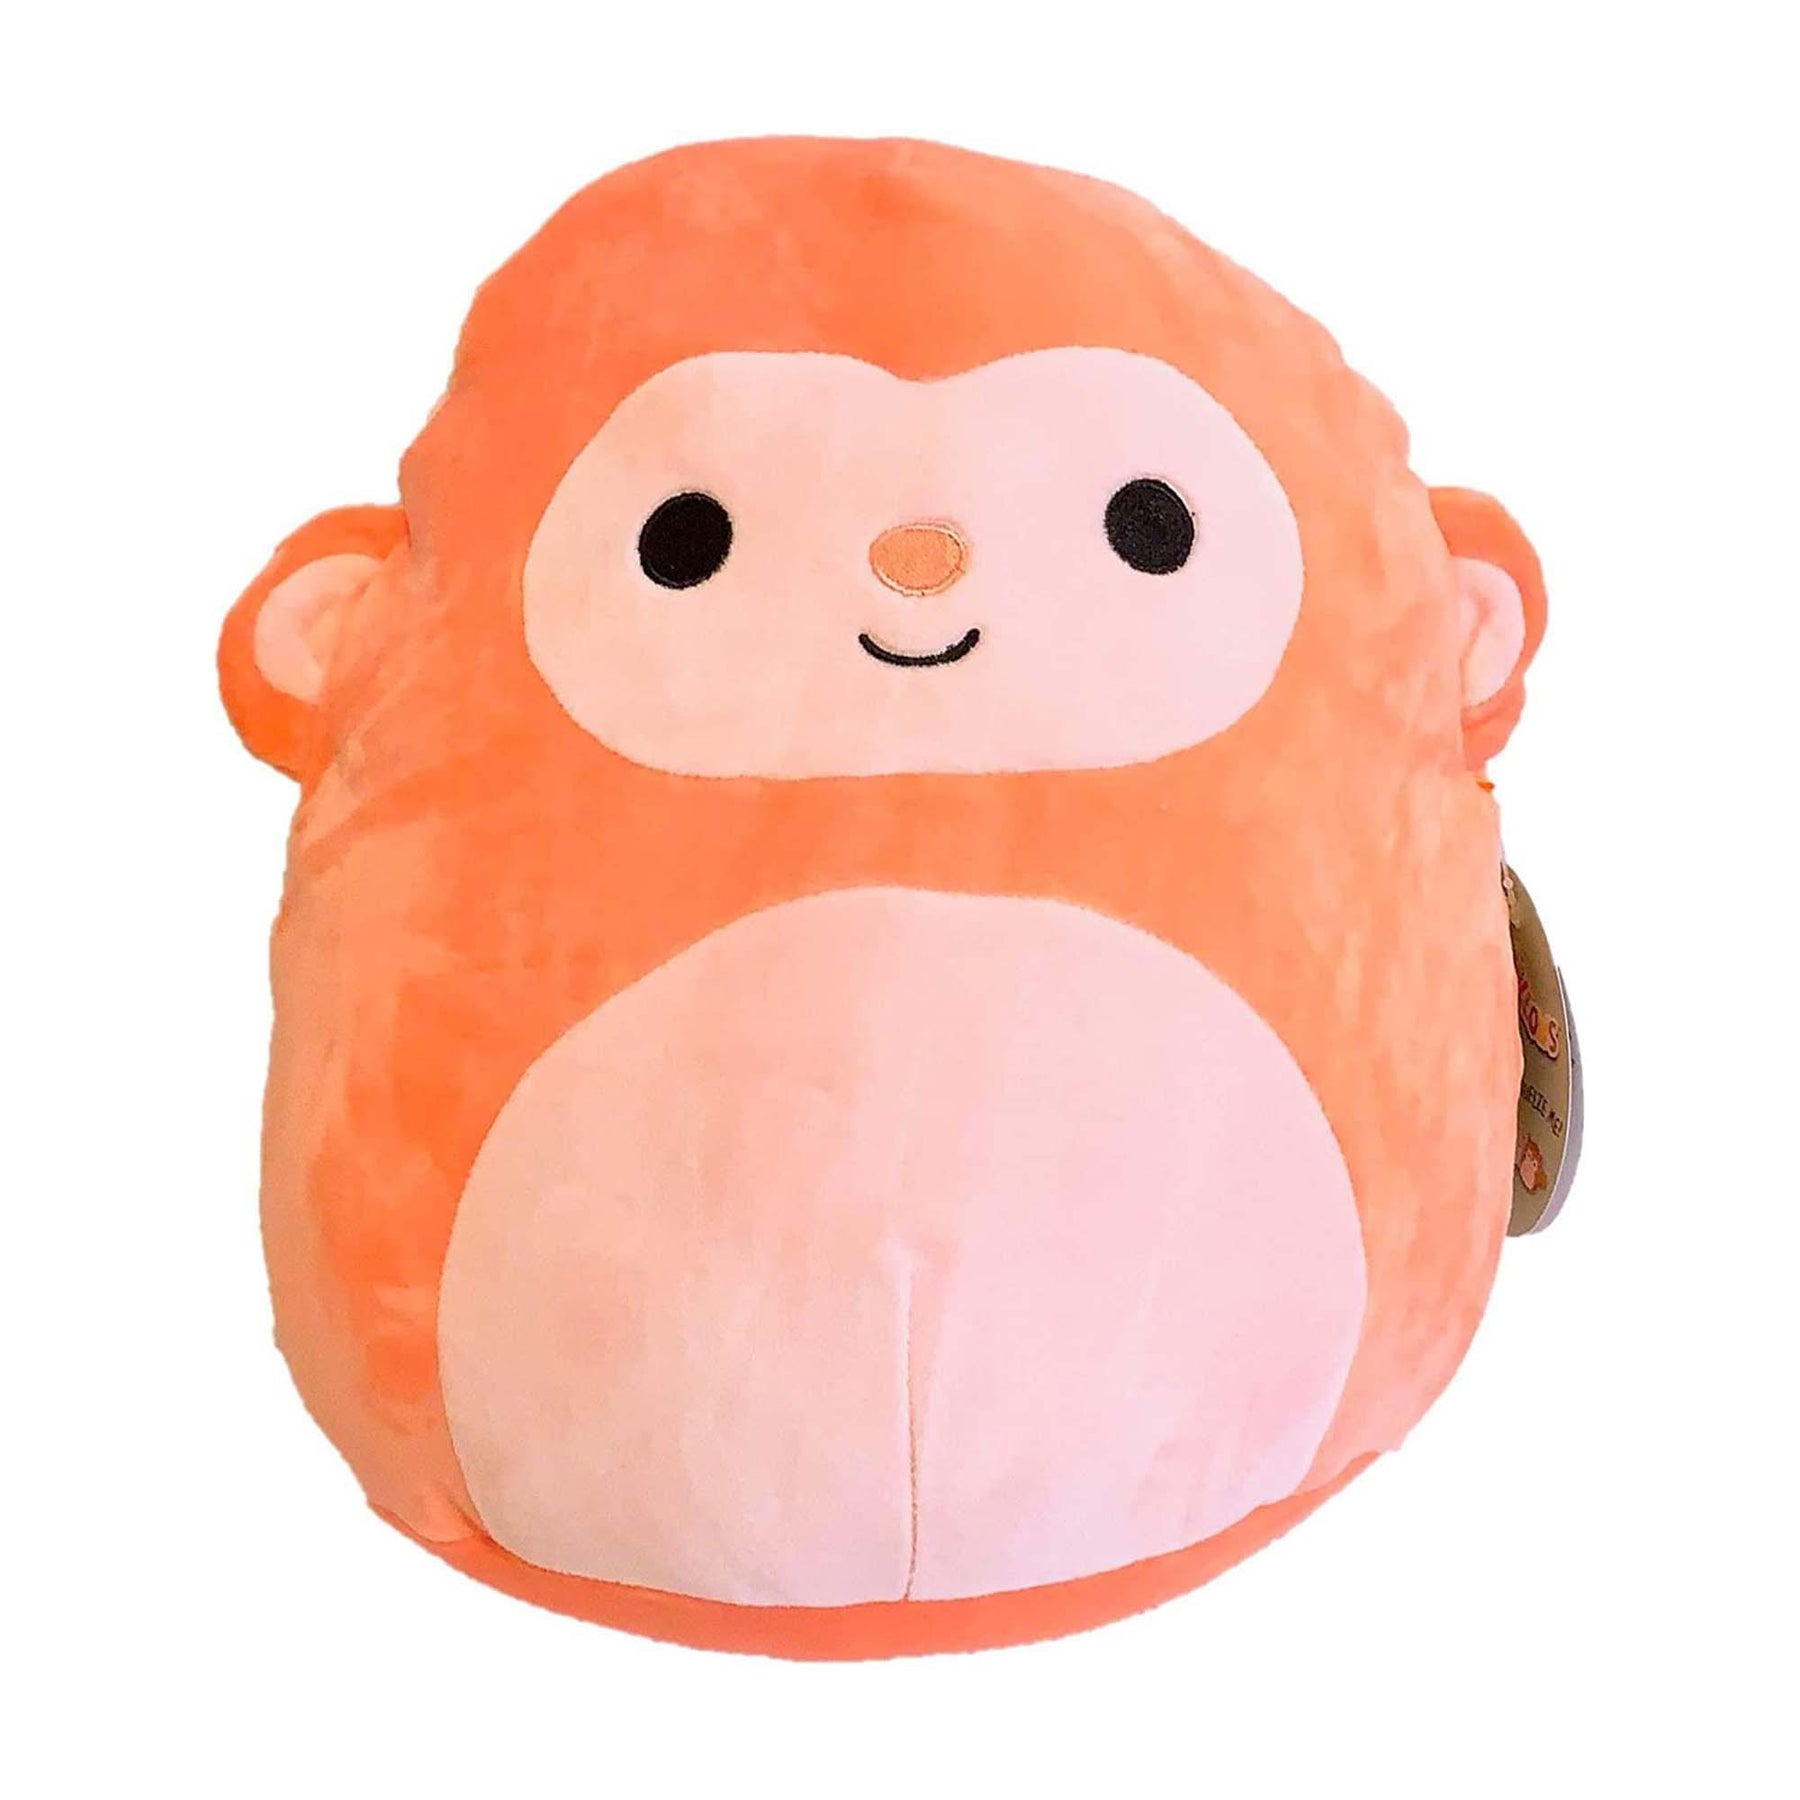 Squishmallow 8 Inch Pillow Plush | Elton the Orange Monkey